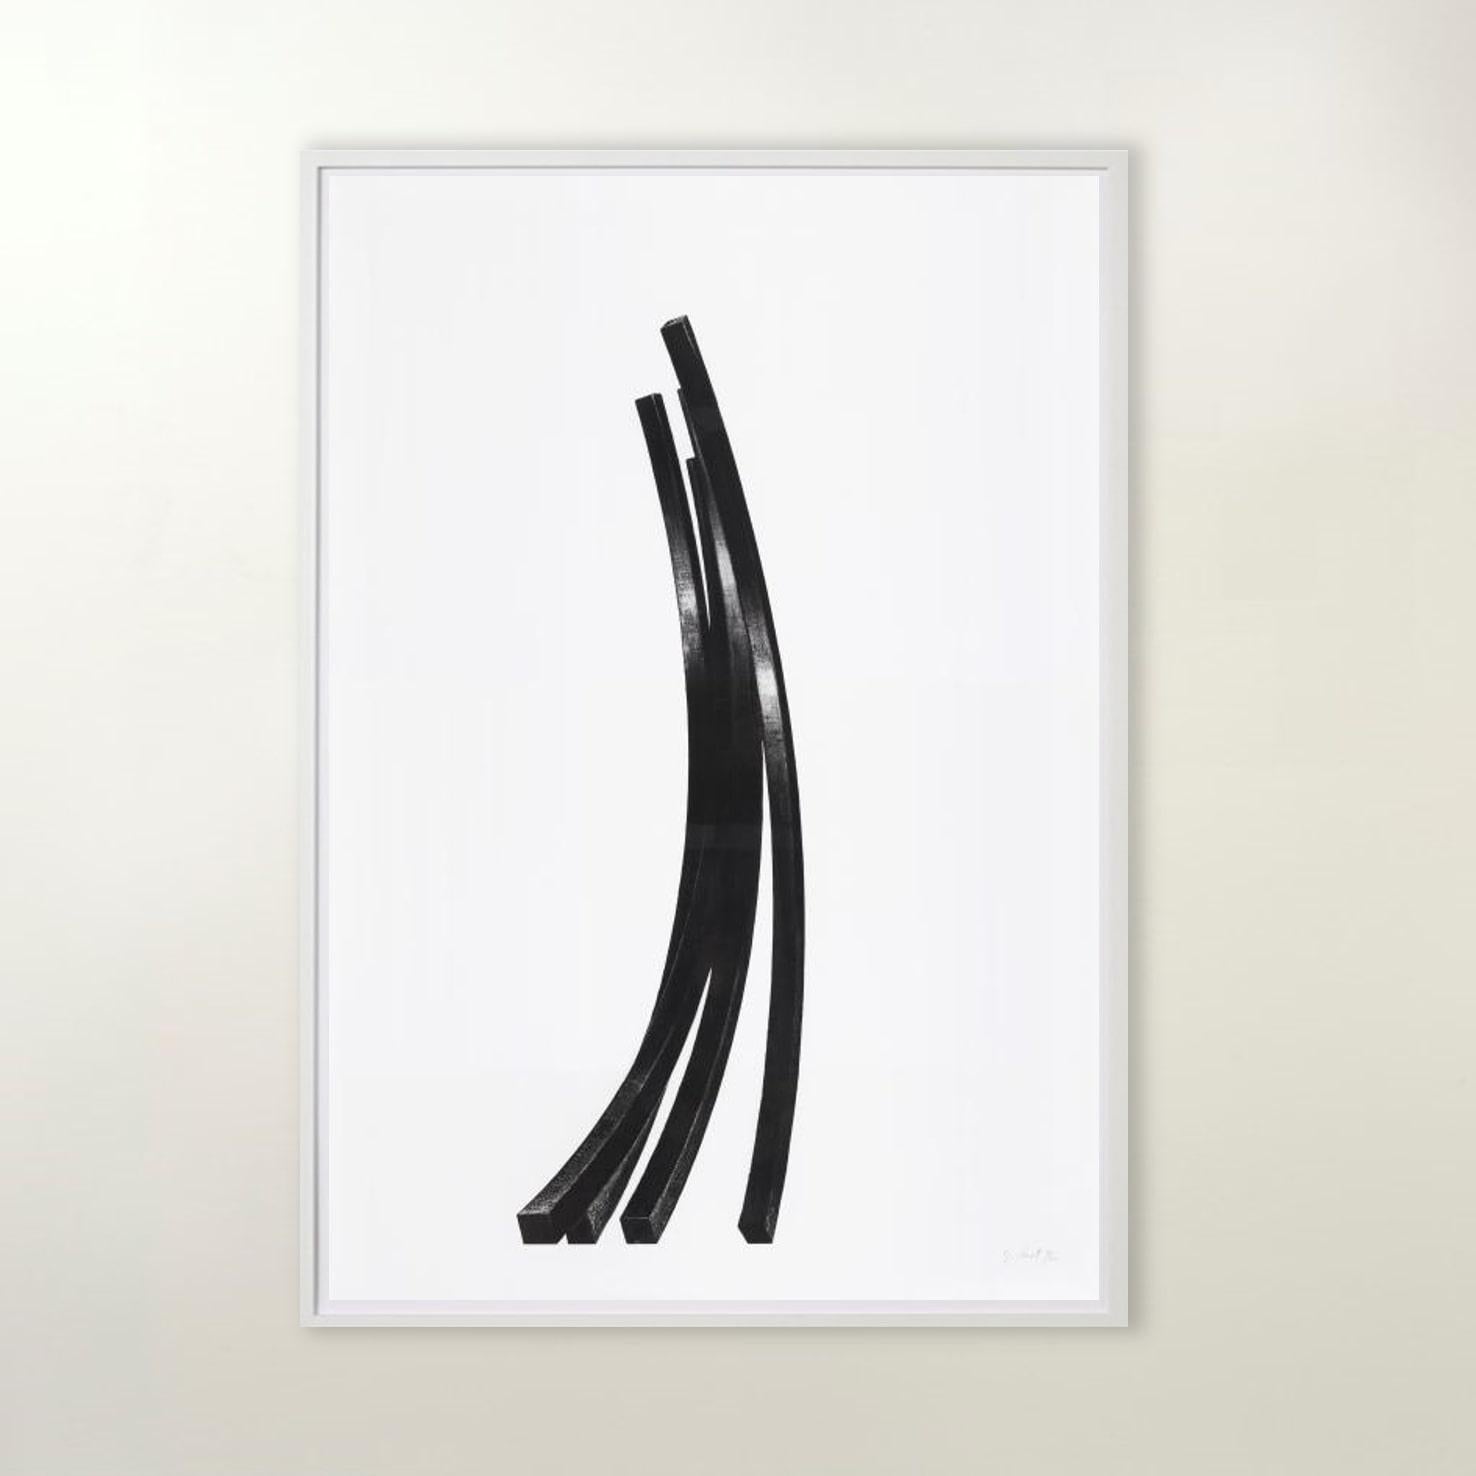 Arcs : Uneven Angles - Contemporain, 21e siècle, gravure, noir, blanc, édition - Print de Bernar Venet